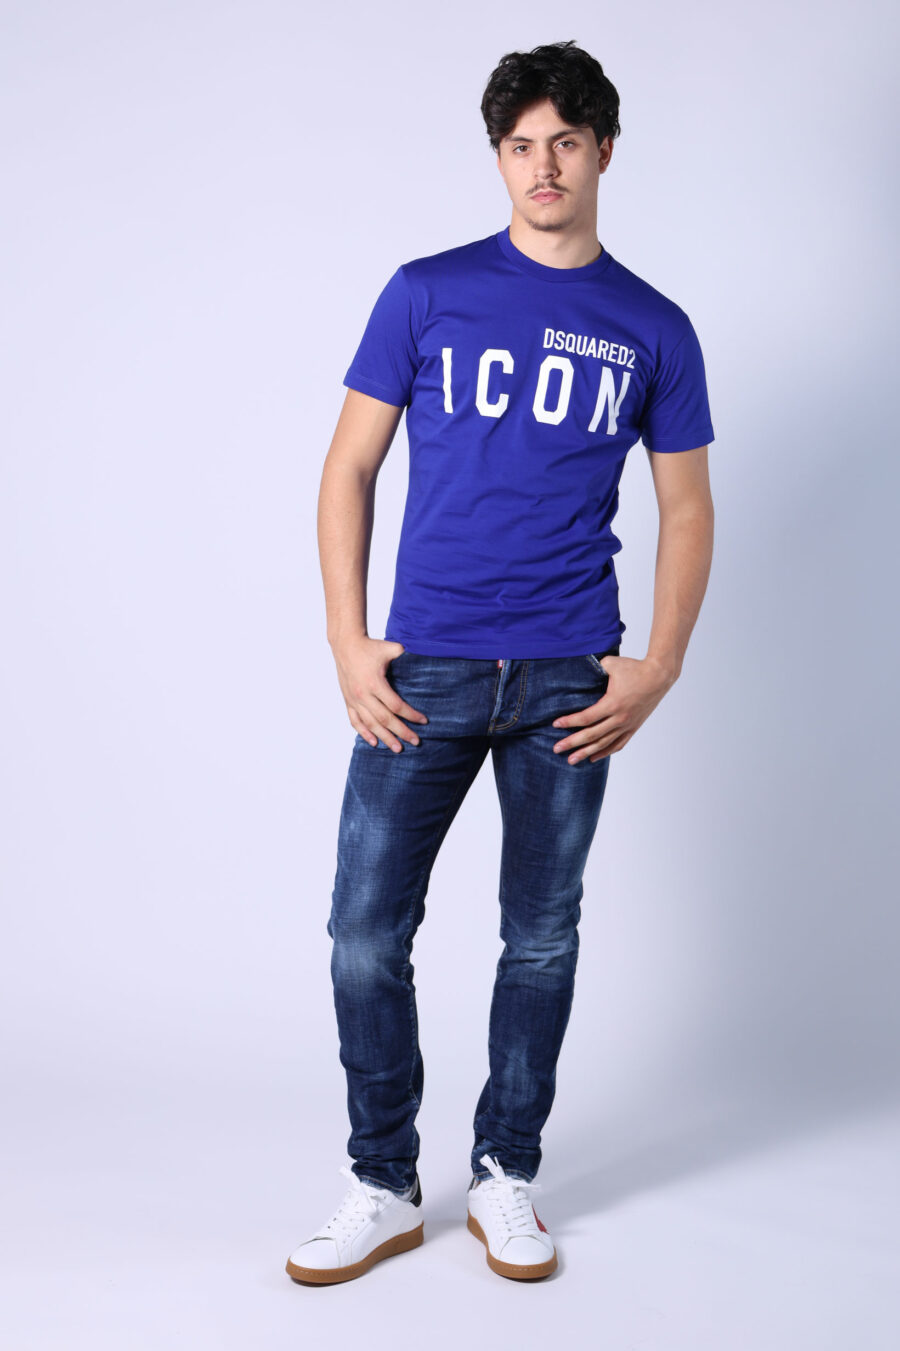 Elektrisch blaues T-Shirt mit weißem "Icon" Maxilogo - Untitled Catalog 05398